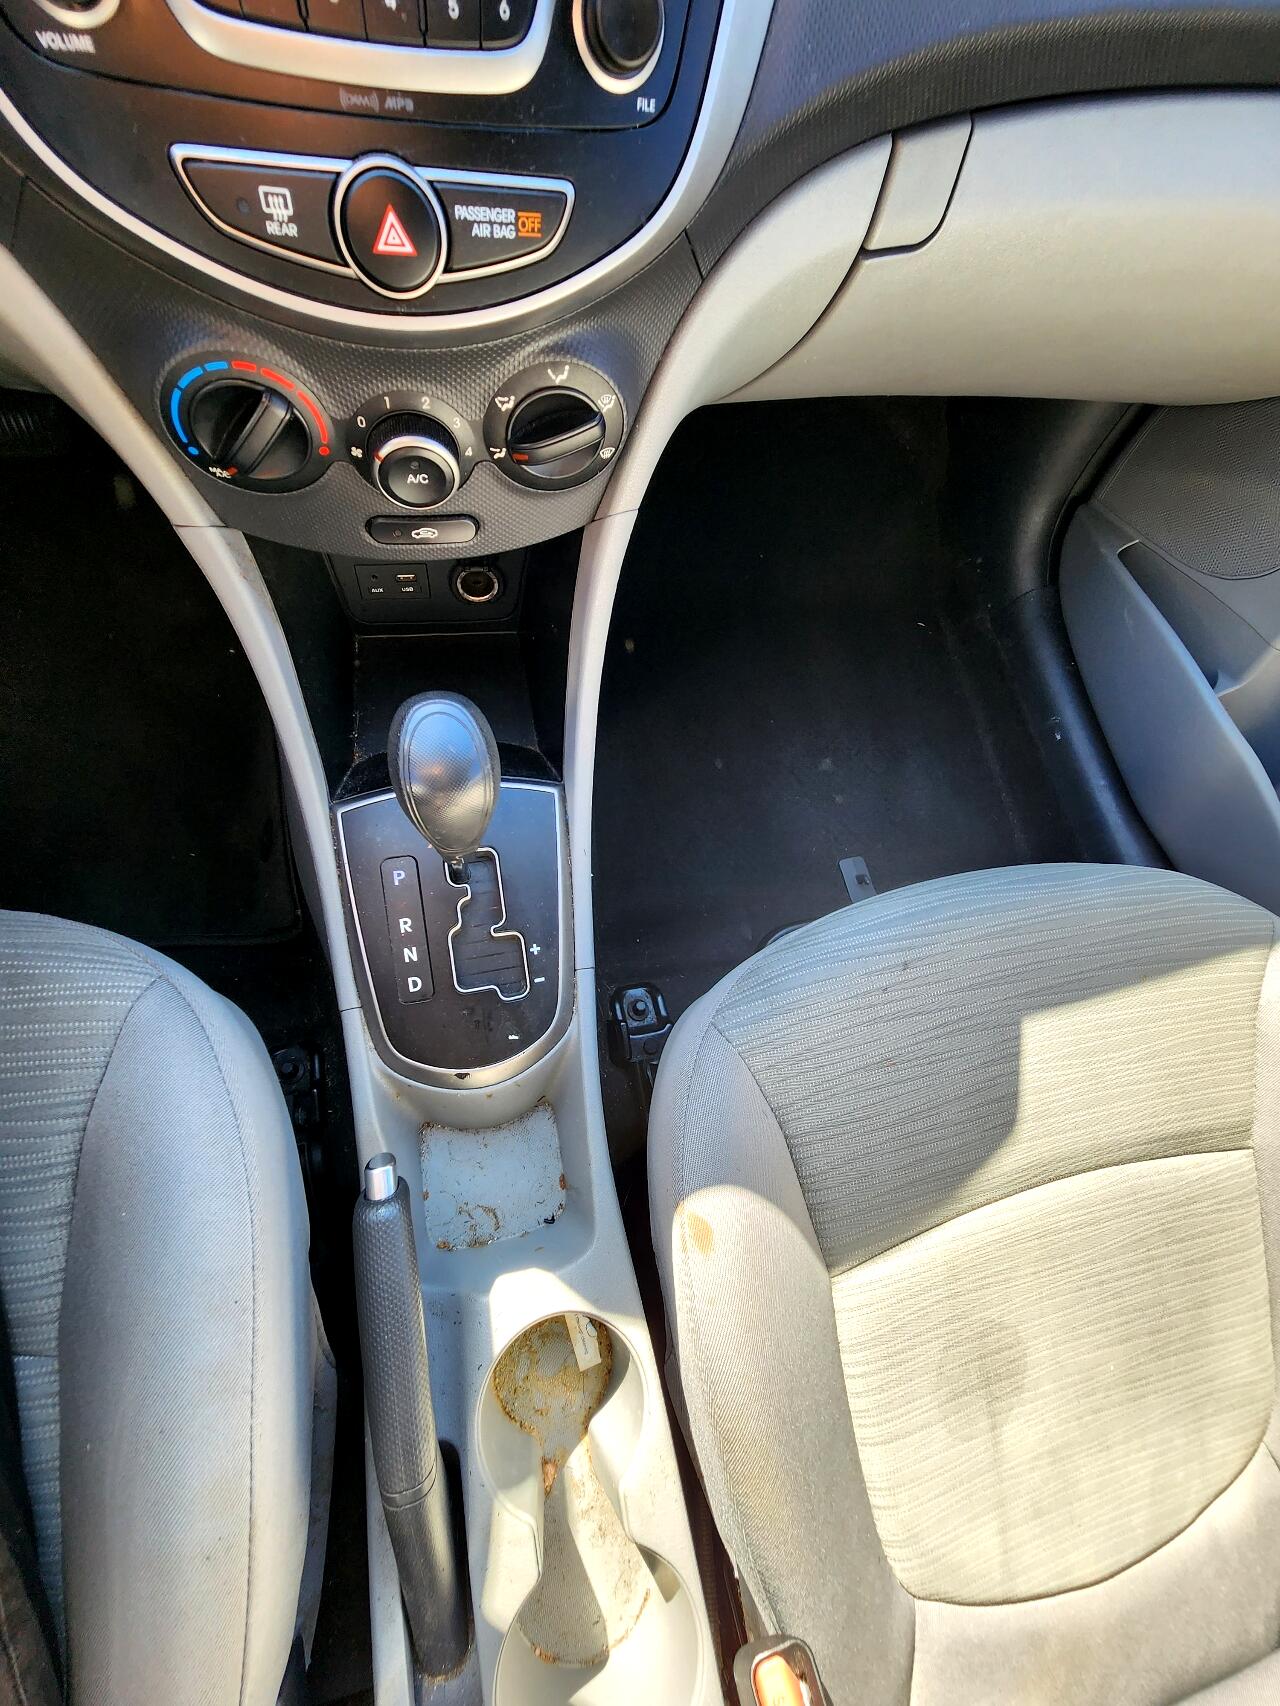 2017 HYUNDAI Accent Sedan - $11,999